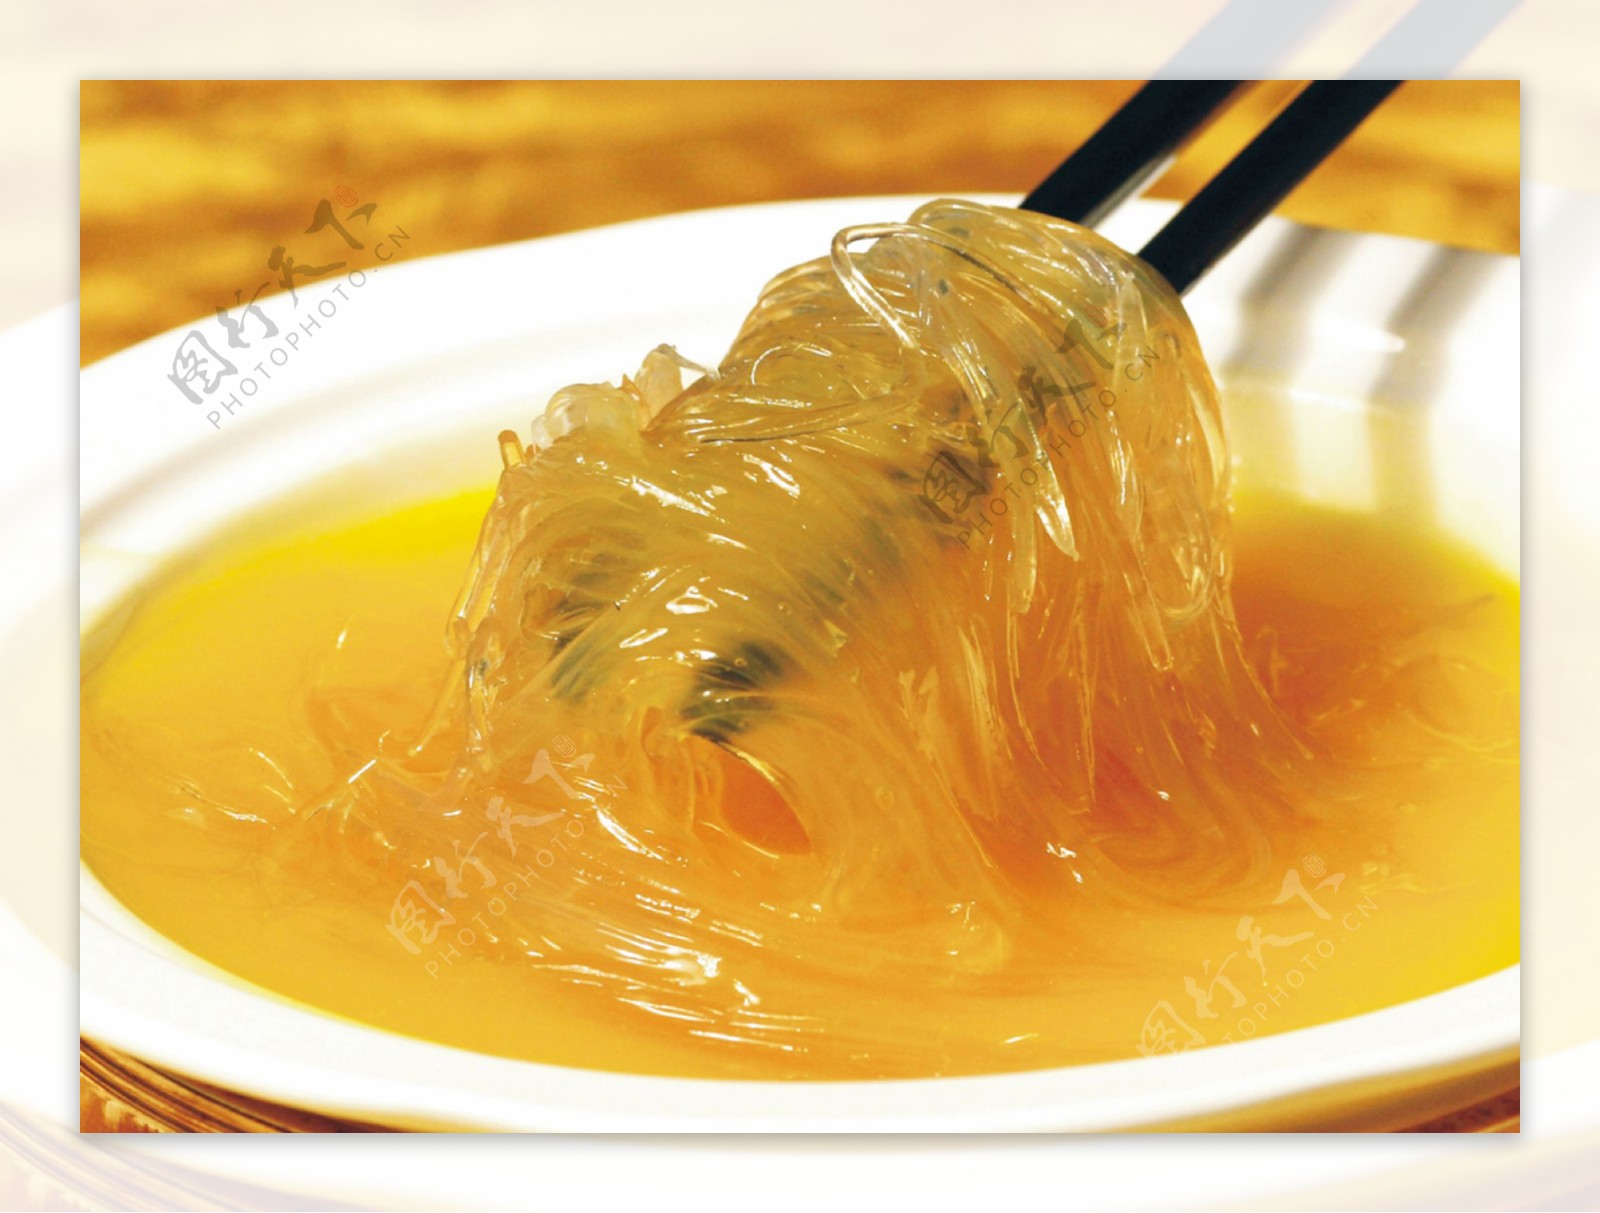 乔伊丝乐厨房: 鱼翅瓜汤 ； Sharkfin Melon Soup